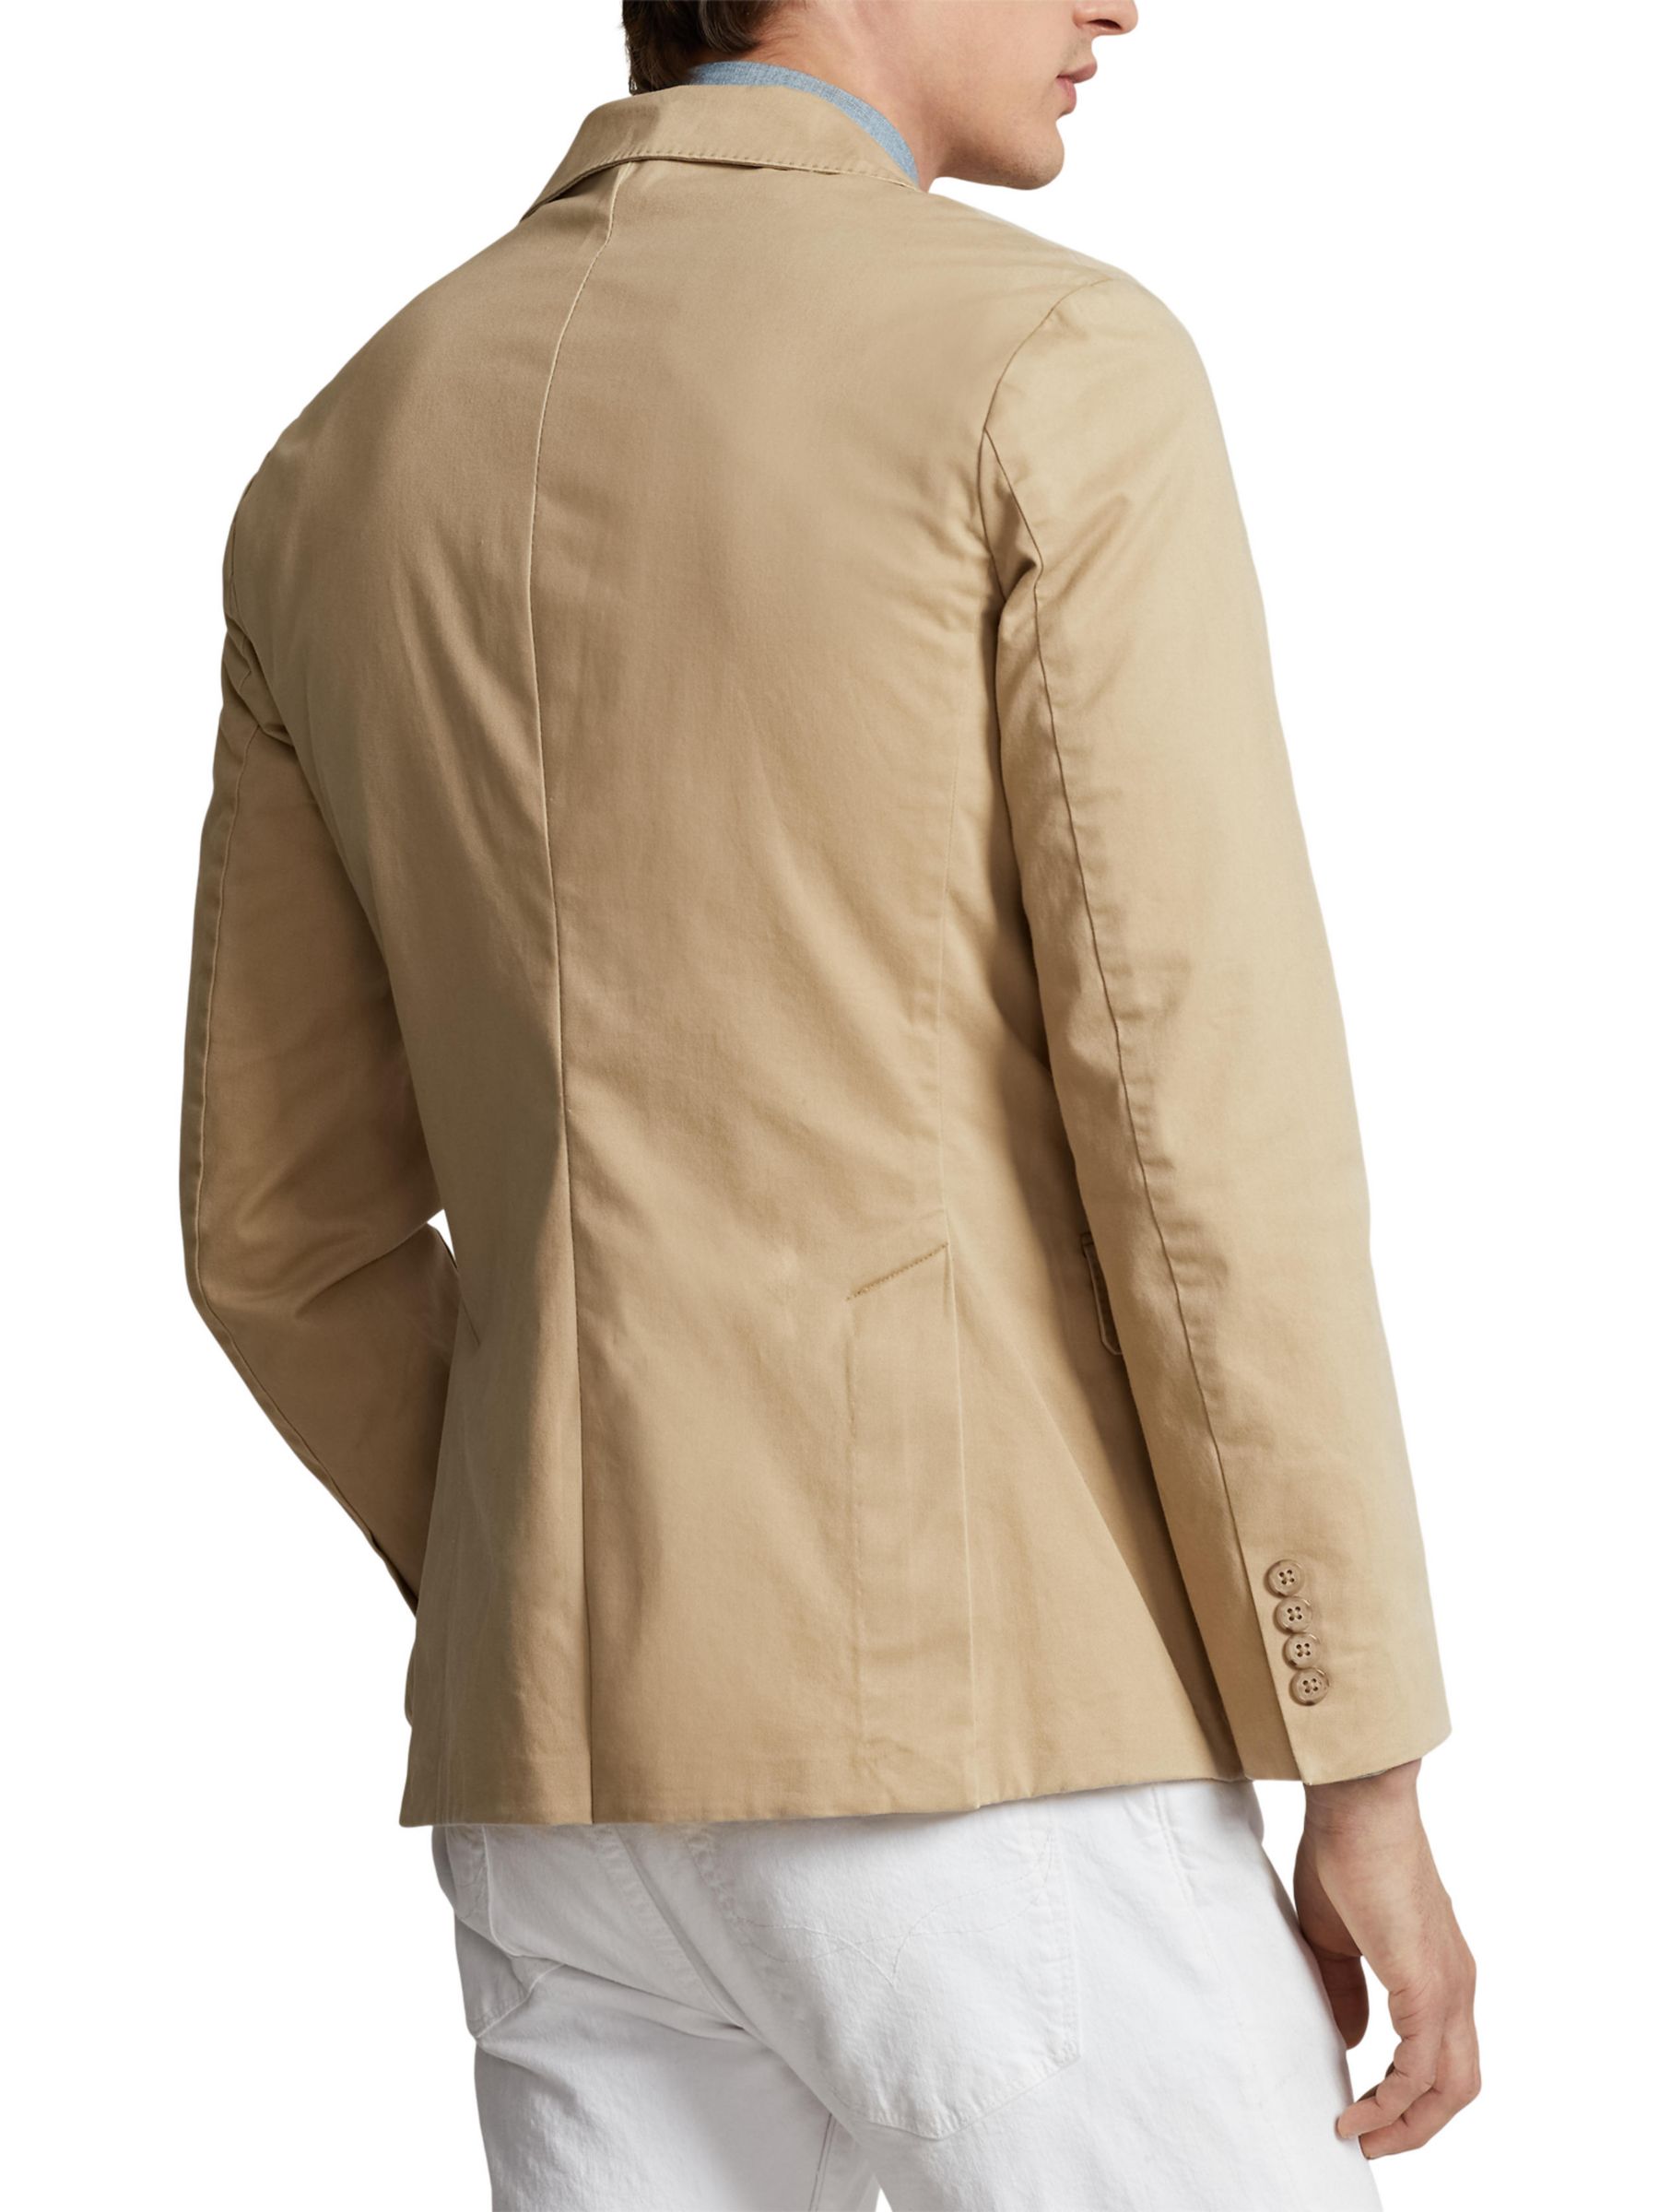 Buy Polo Ralph Lauren Sport Coat Blazer Online at johnlewis.com